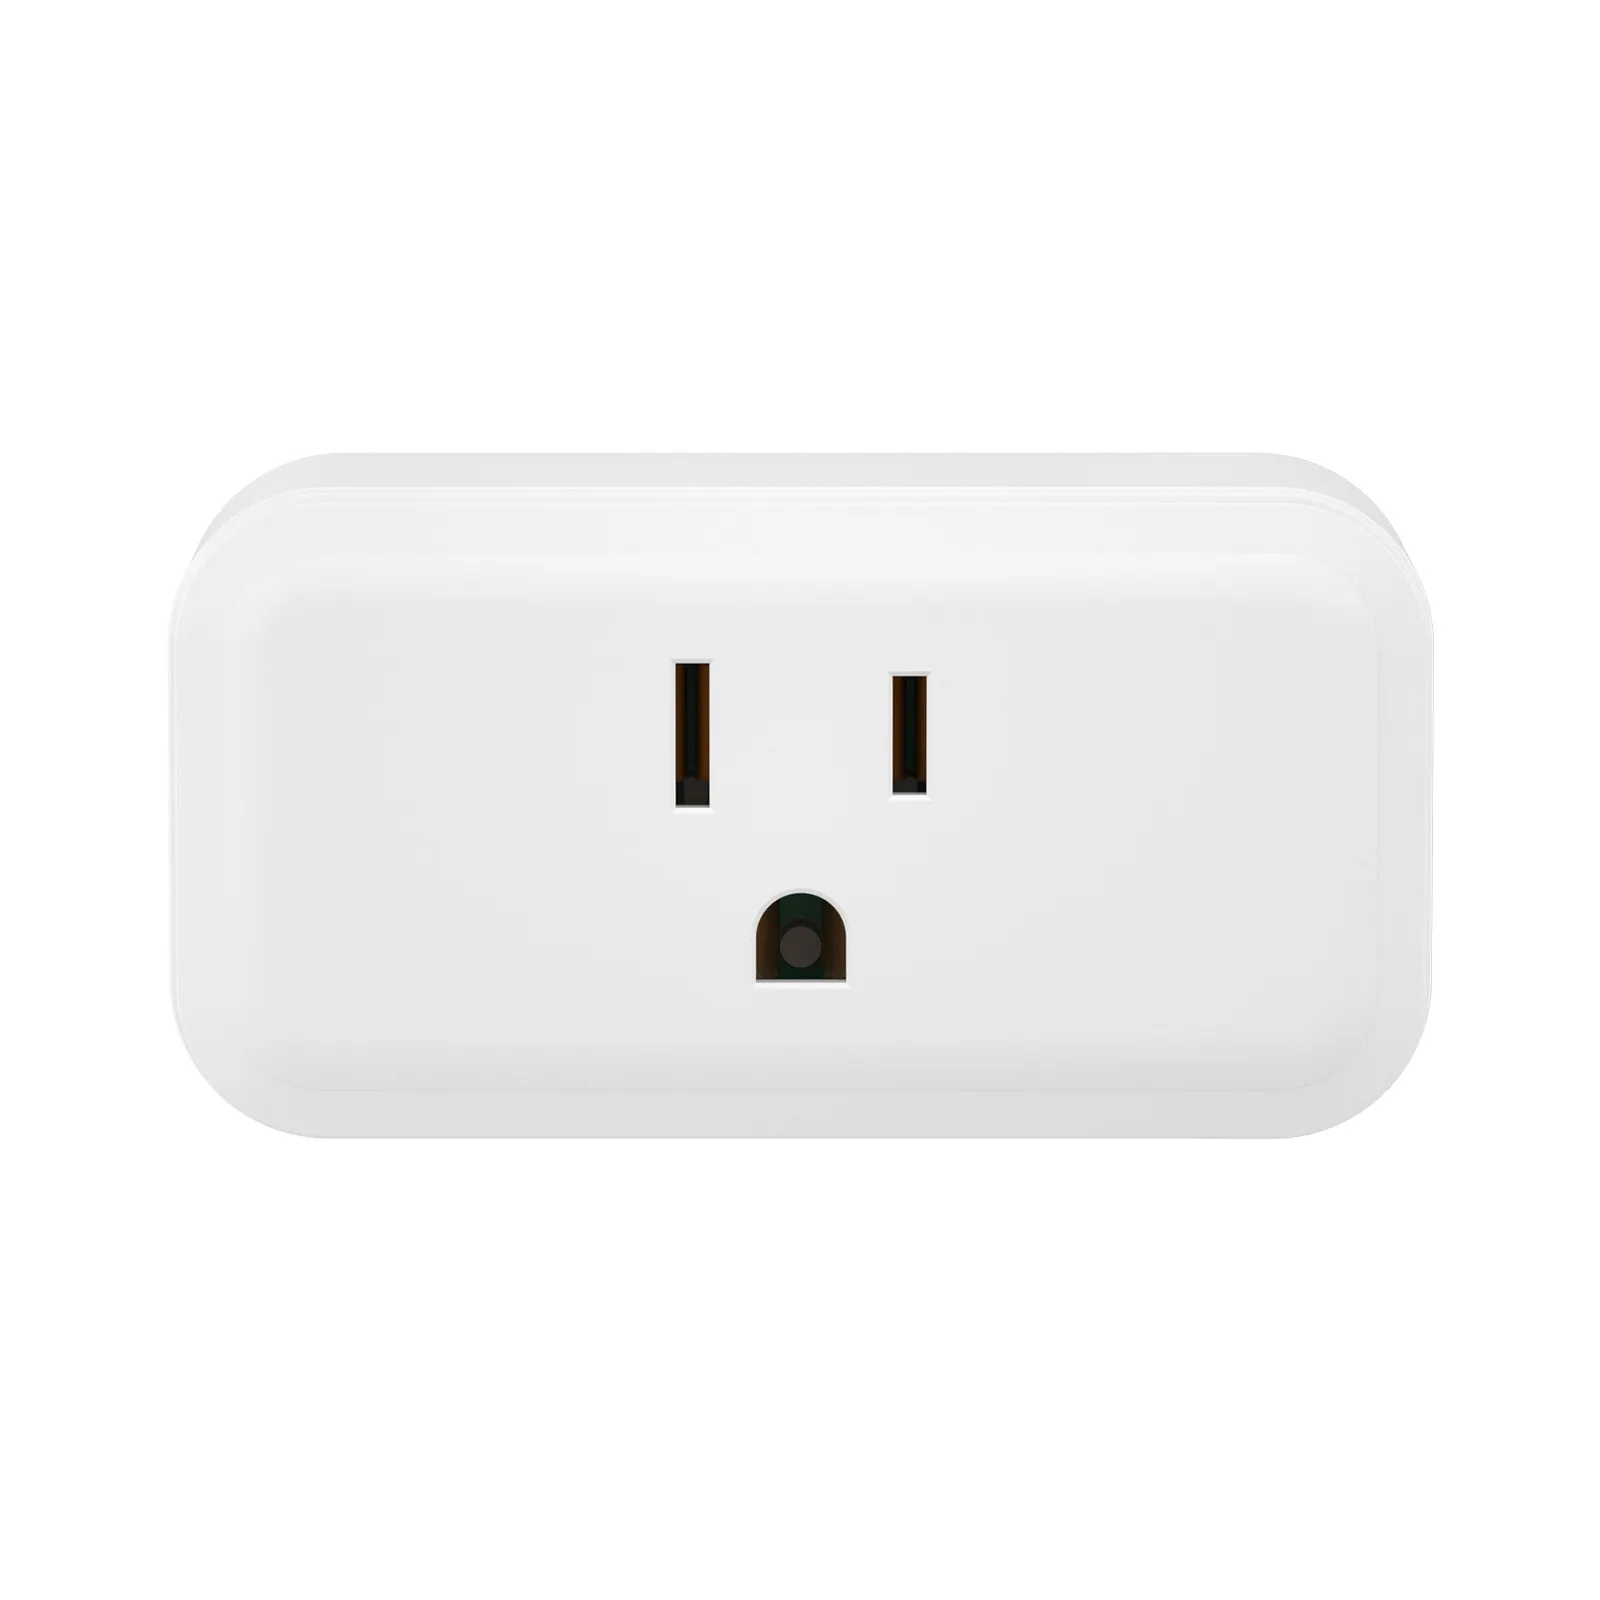 SONOFF Zigbee Smart Plug| iPlug Series S40 Lite 1